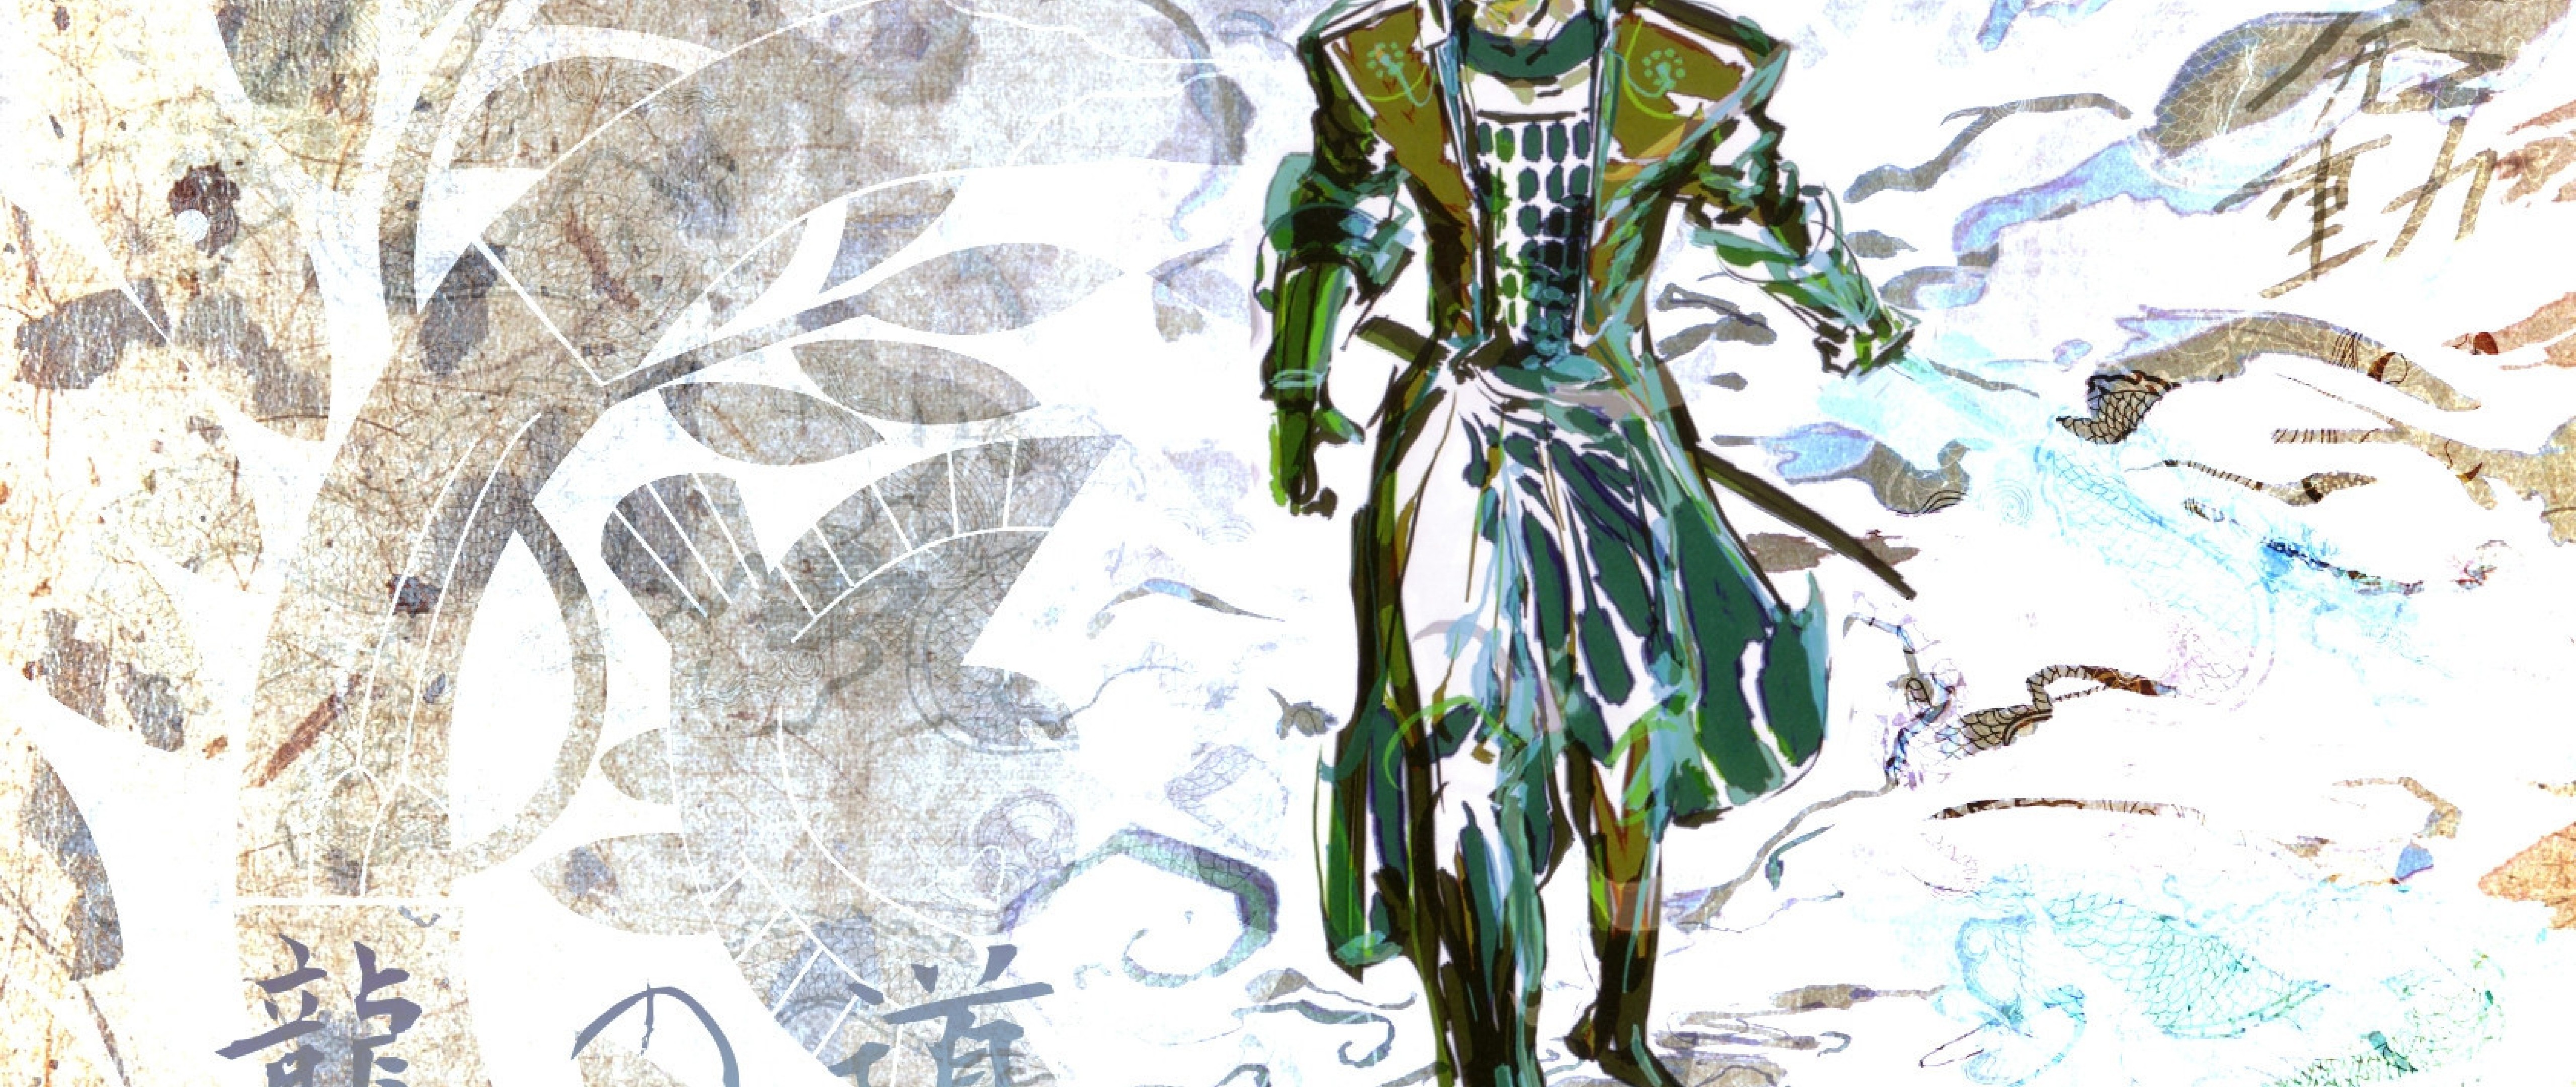 Sengoku Basara 2 Heroes - HD Wallpaper 